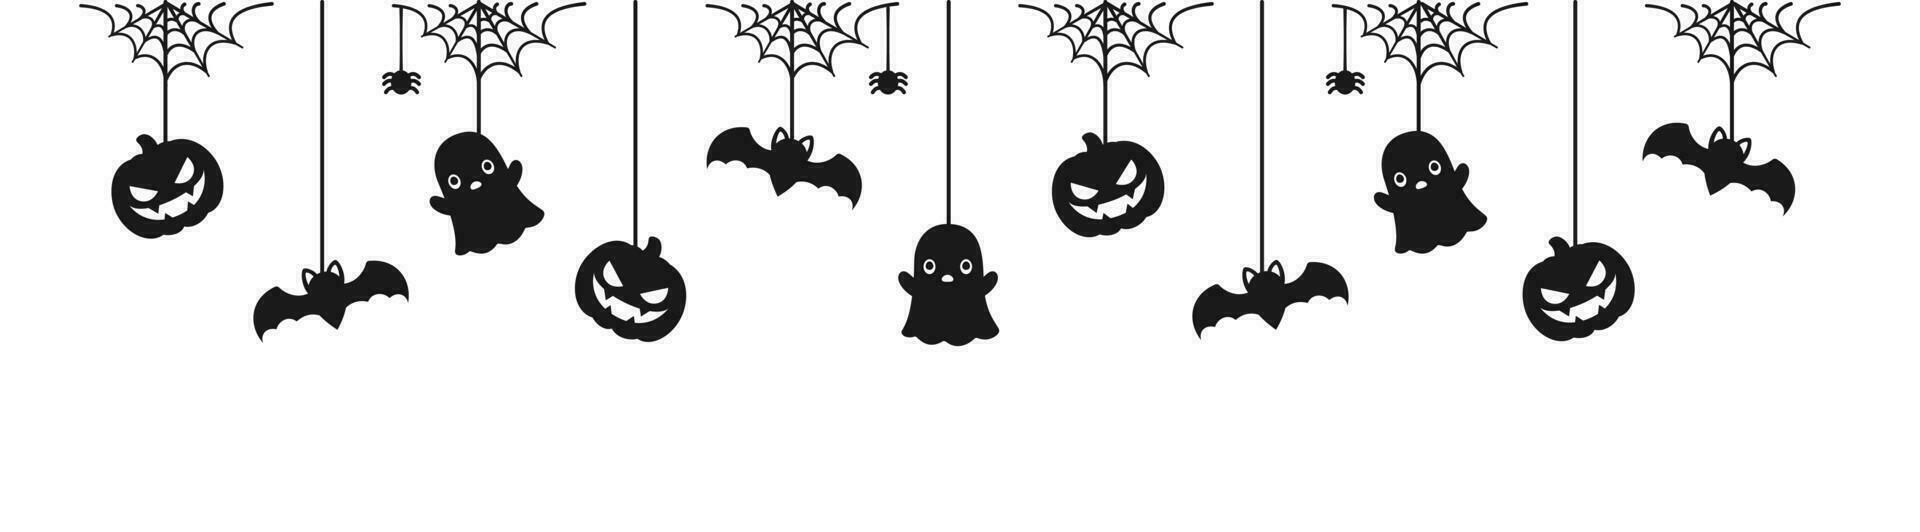 Lycklig halloween baner eller gräns med svart fladdermöss, Spindel webb, spöke och domkraft o lykta pumpor. hängande läskigt ornament dekoration vektor illustration, lura eller behandla fest inbjudan